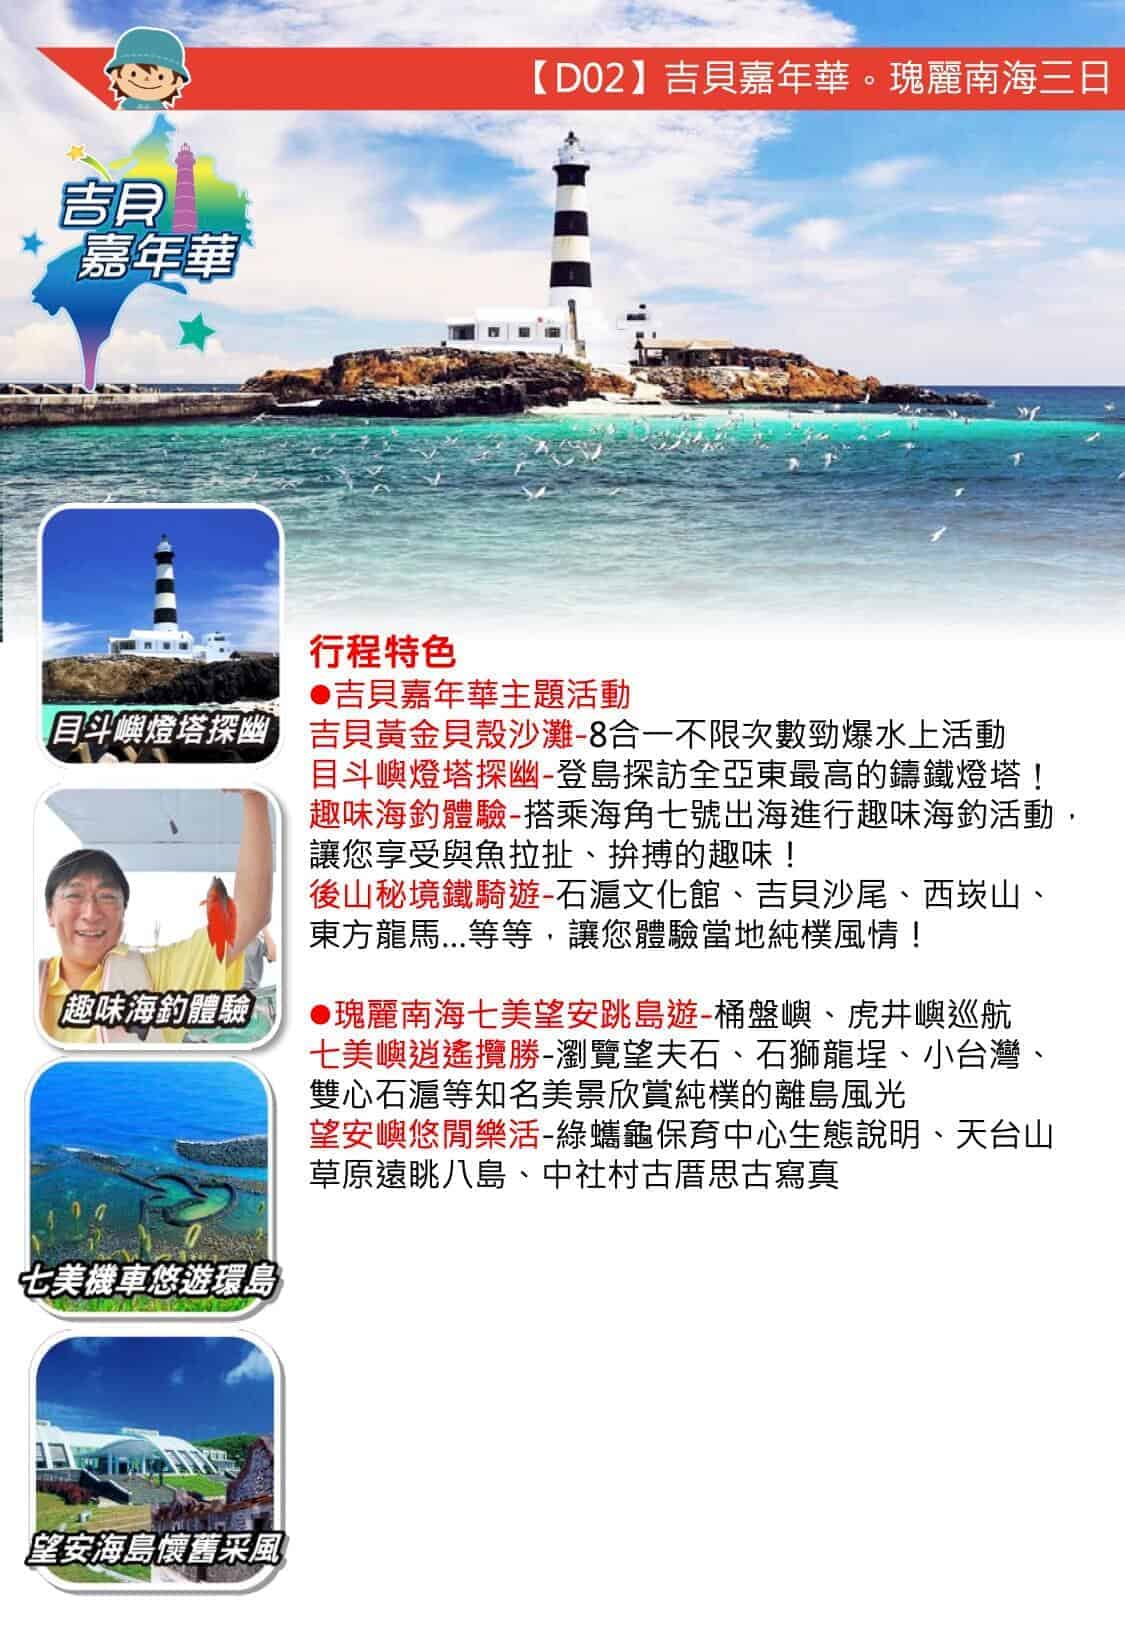 澎湖團體行程 |自由先生 印象旅行社